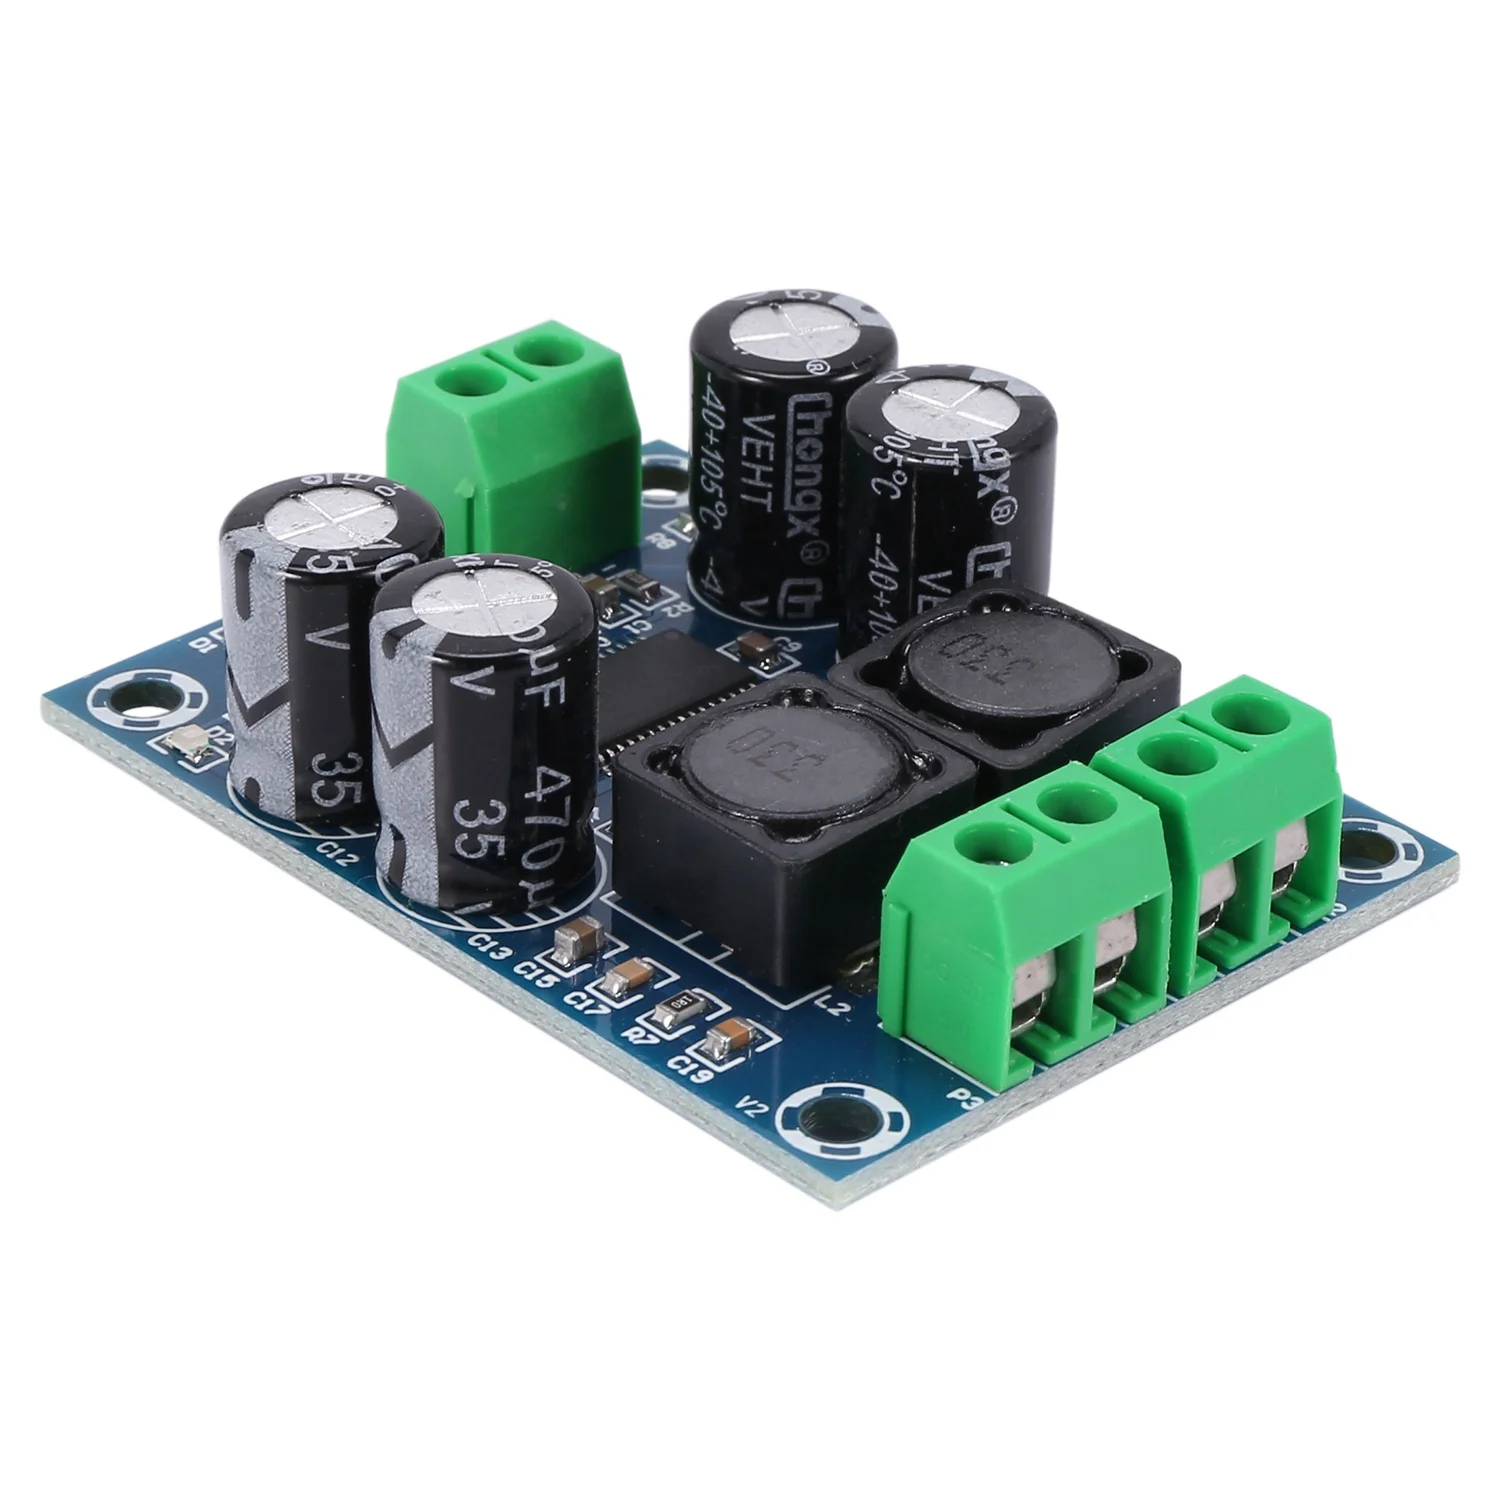 

XH-M311 Mini Digital Amplifier Board TPA3118 o Amplifier Board o Power Amplifier Module Mono 60W